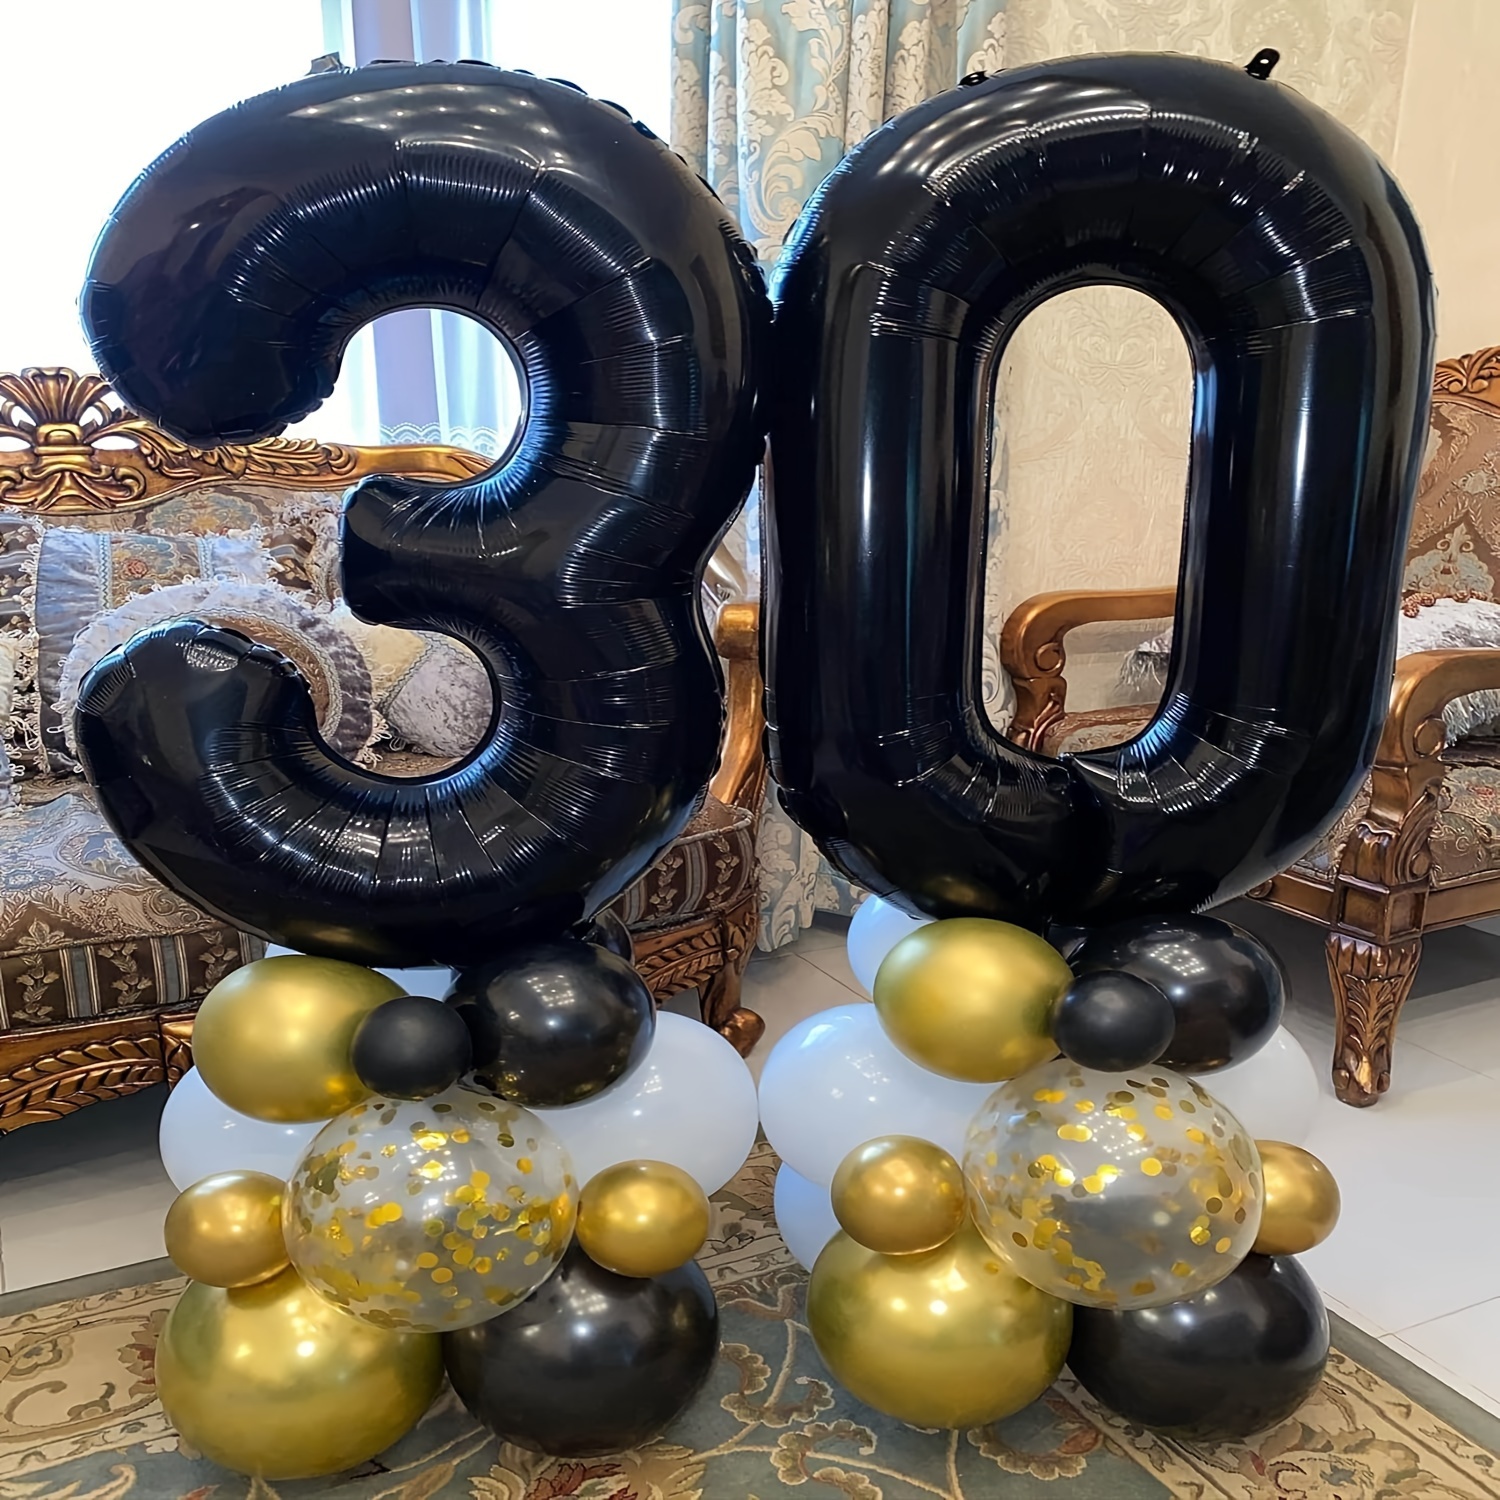 Decoraciones de cumpleaños número 30, suministros para fiestas, globos de  30 cumpleaños color oro rosa, globo de Mylar número 30, decoración de  globos